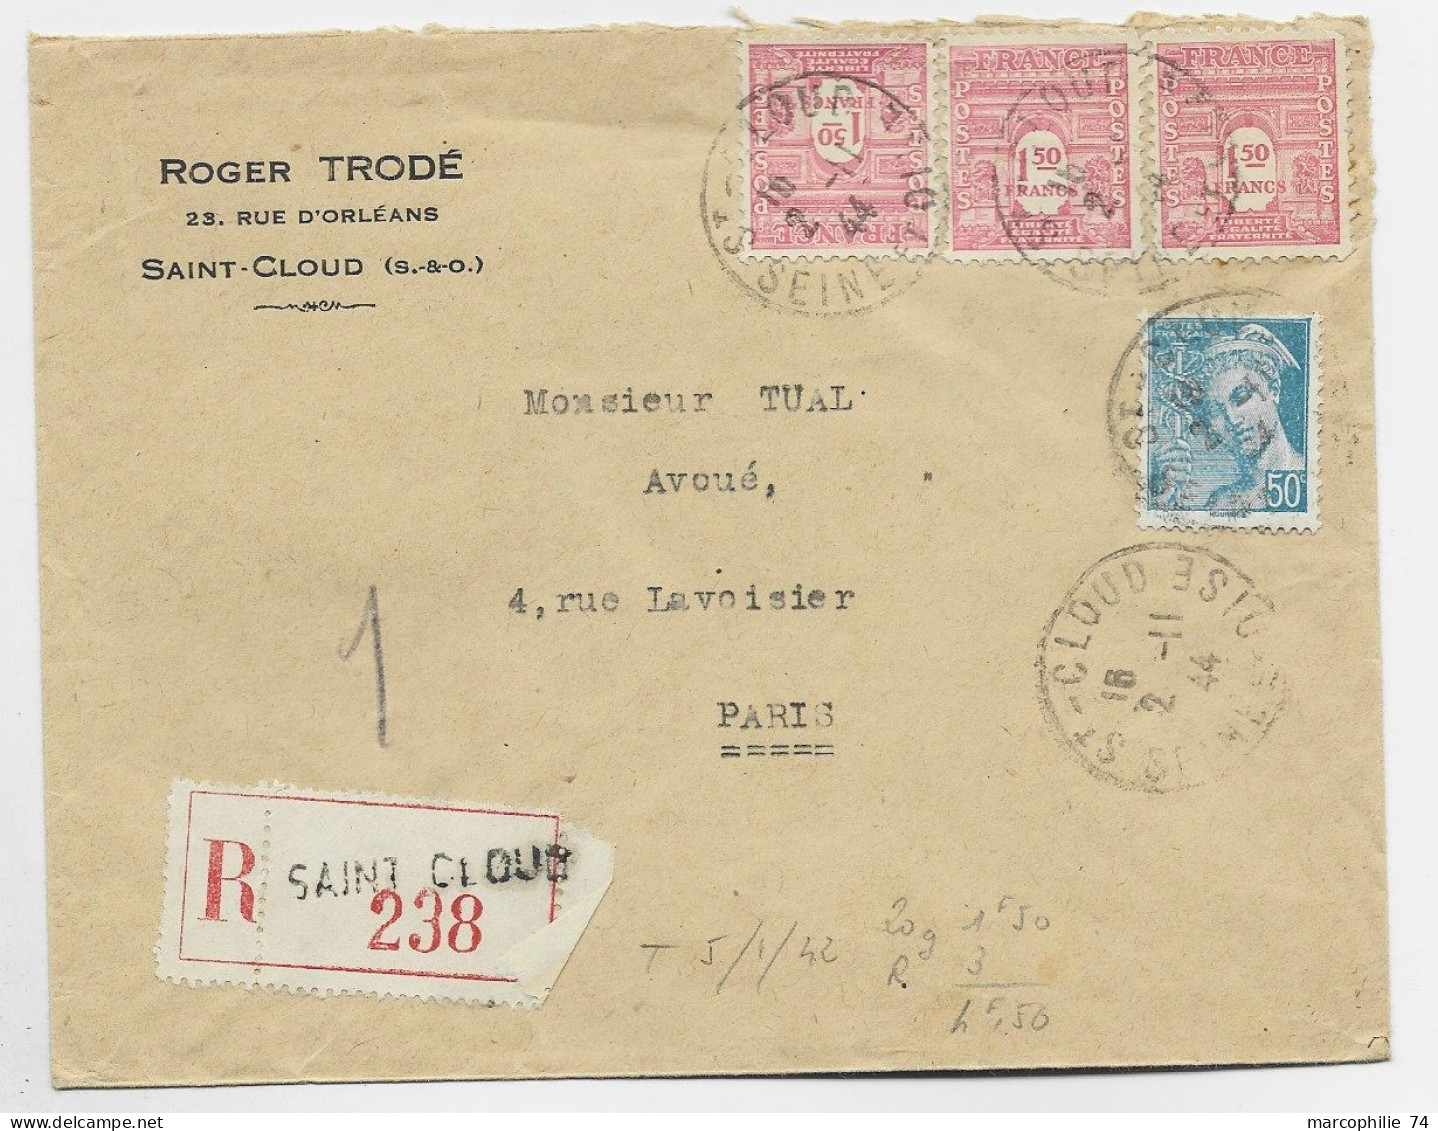 FRANCE ARC TRIOMPHE 1FR50 ROSEX3+50C MERCURE LETTRE COVER REC SAINT CLOUD 2.11.1944 AU TARIF - 1944-45 Arc De Triomphe